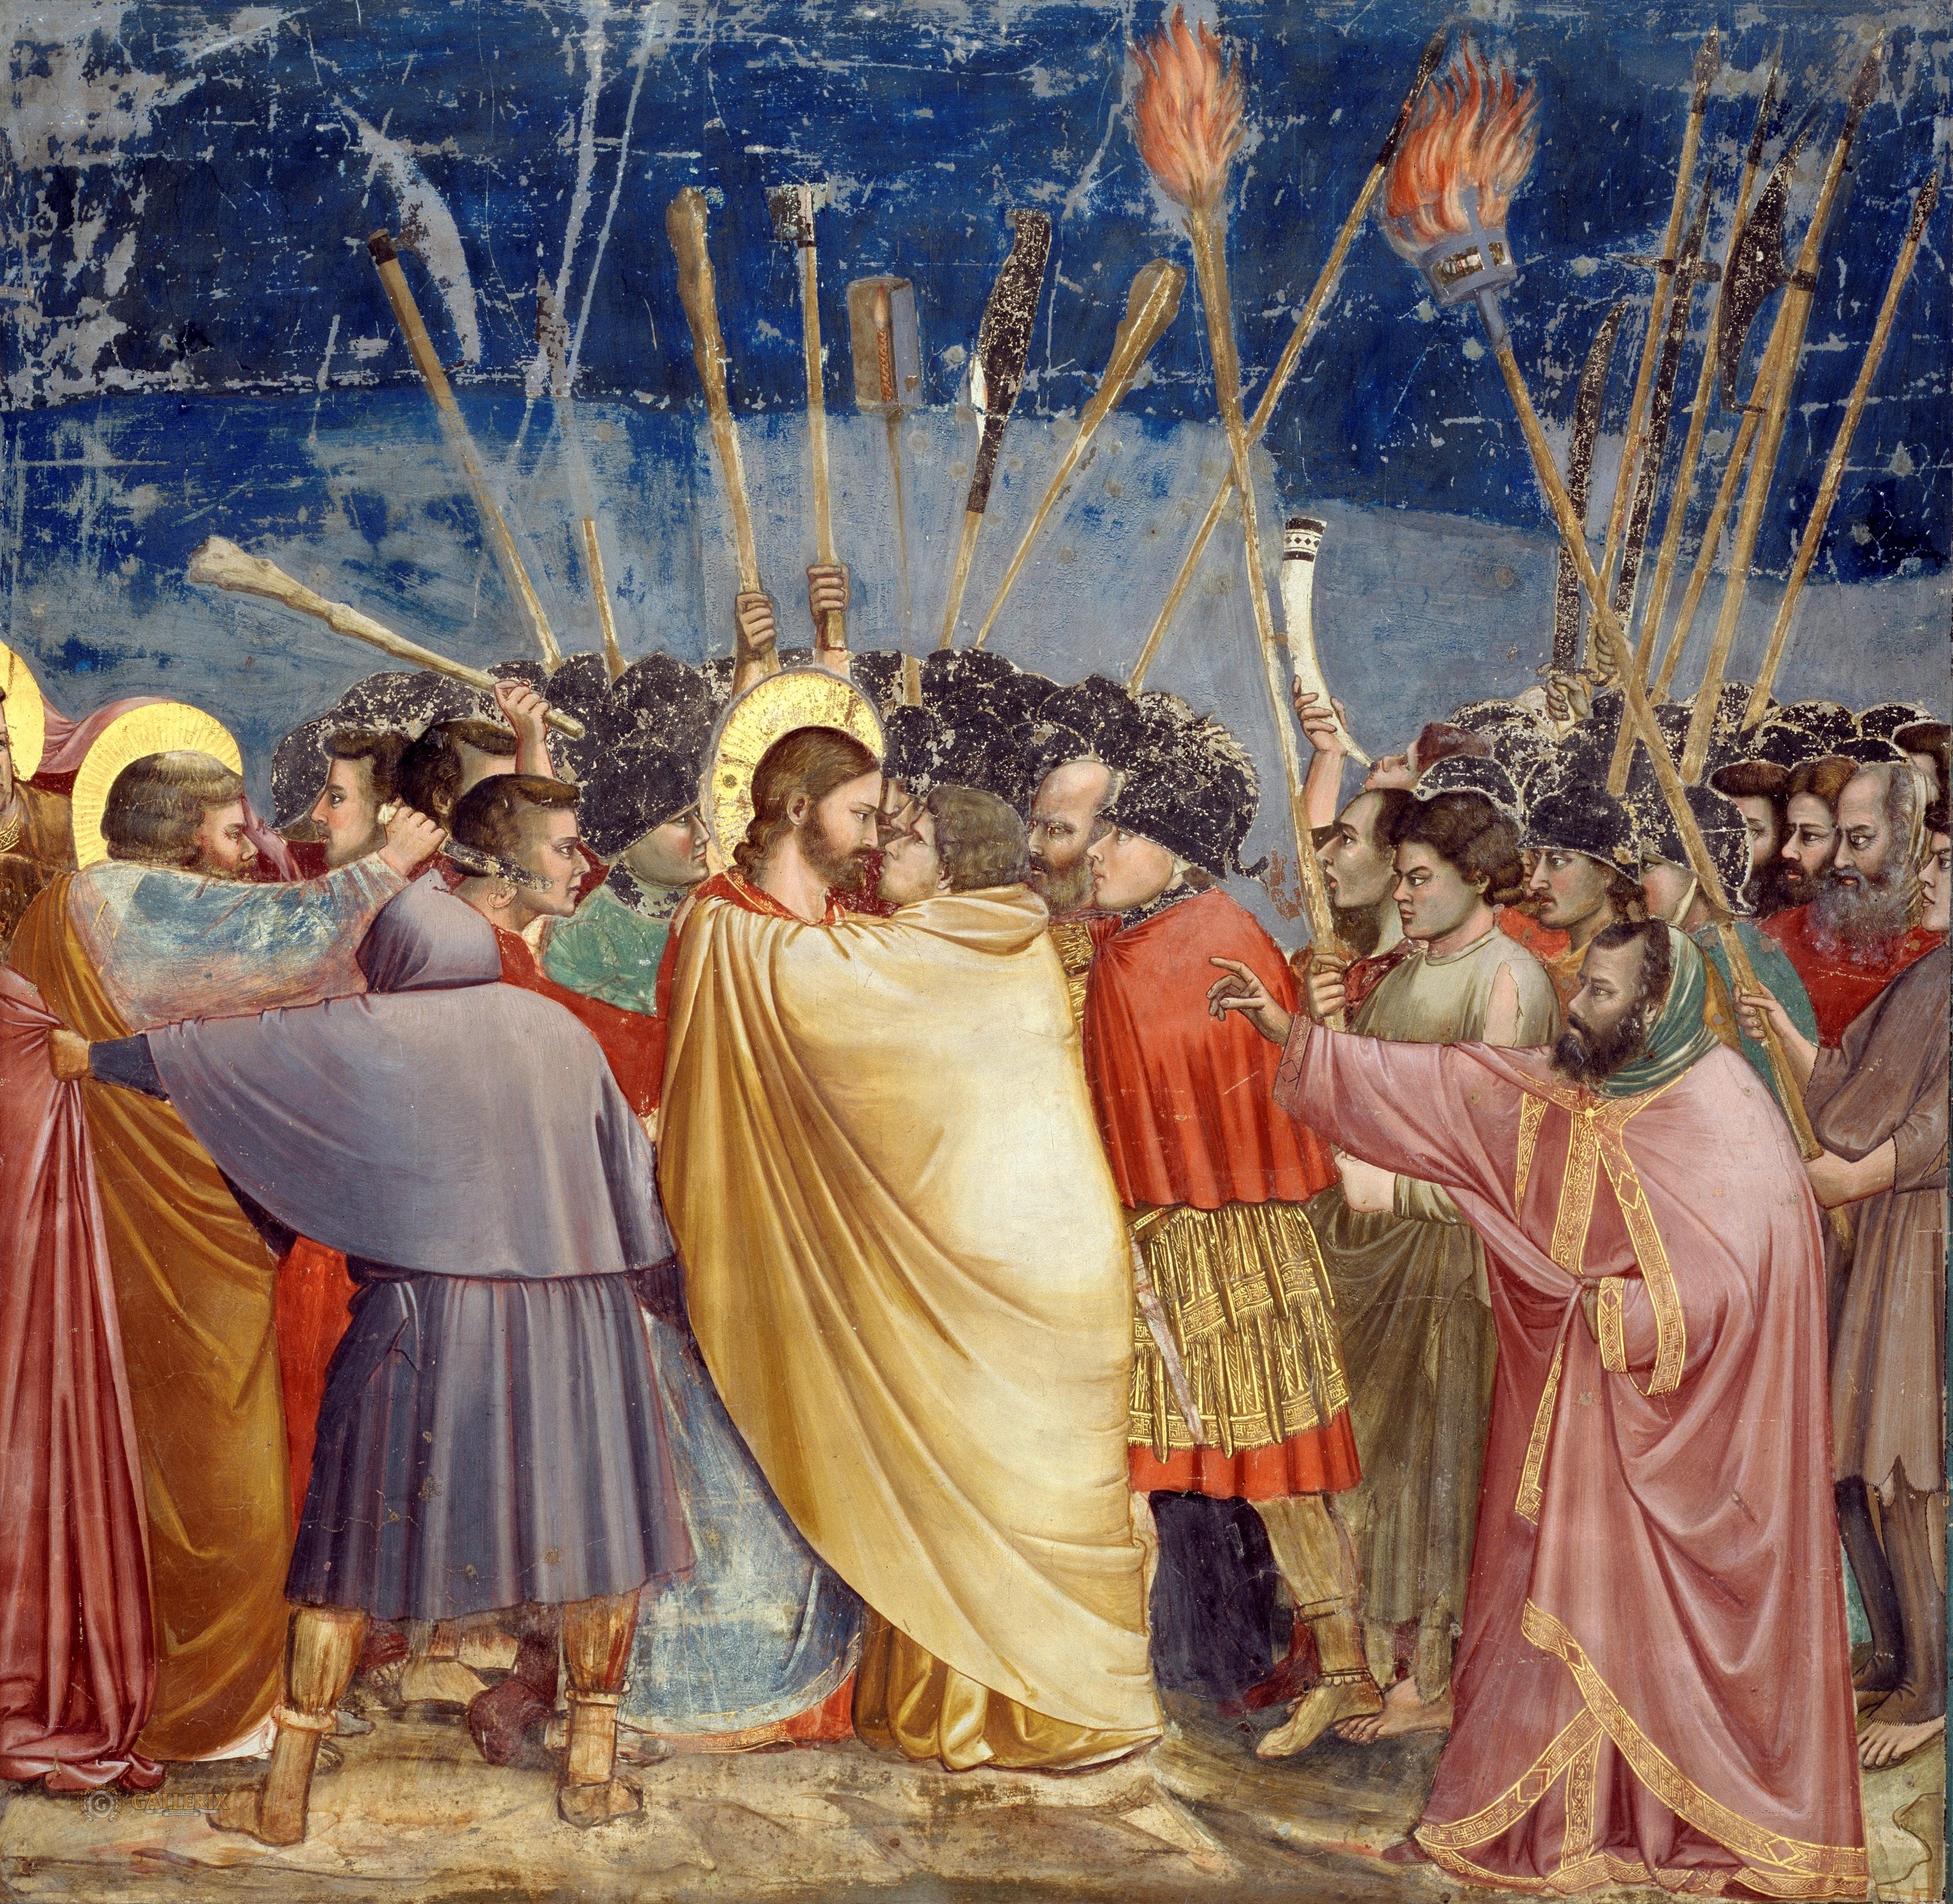 The Kiss of Judas by Giotto di Bondone - 1304-1306 - 200 × 185 cm Cappella degli Scrovegni